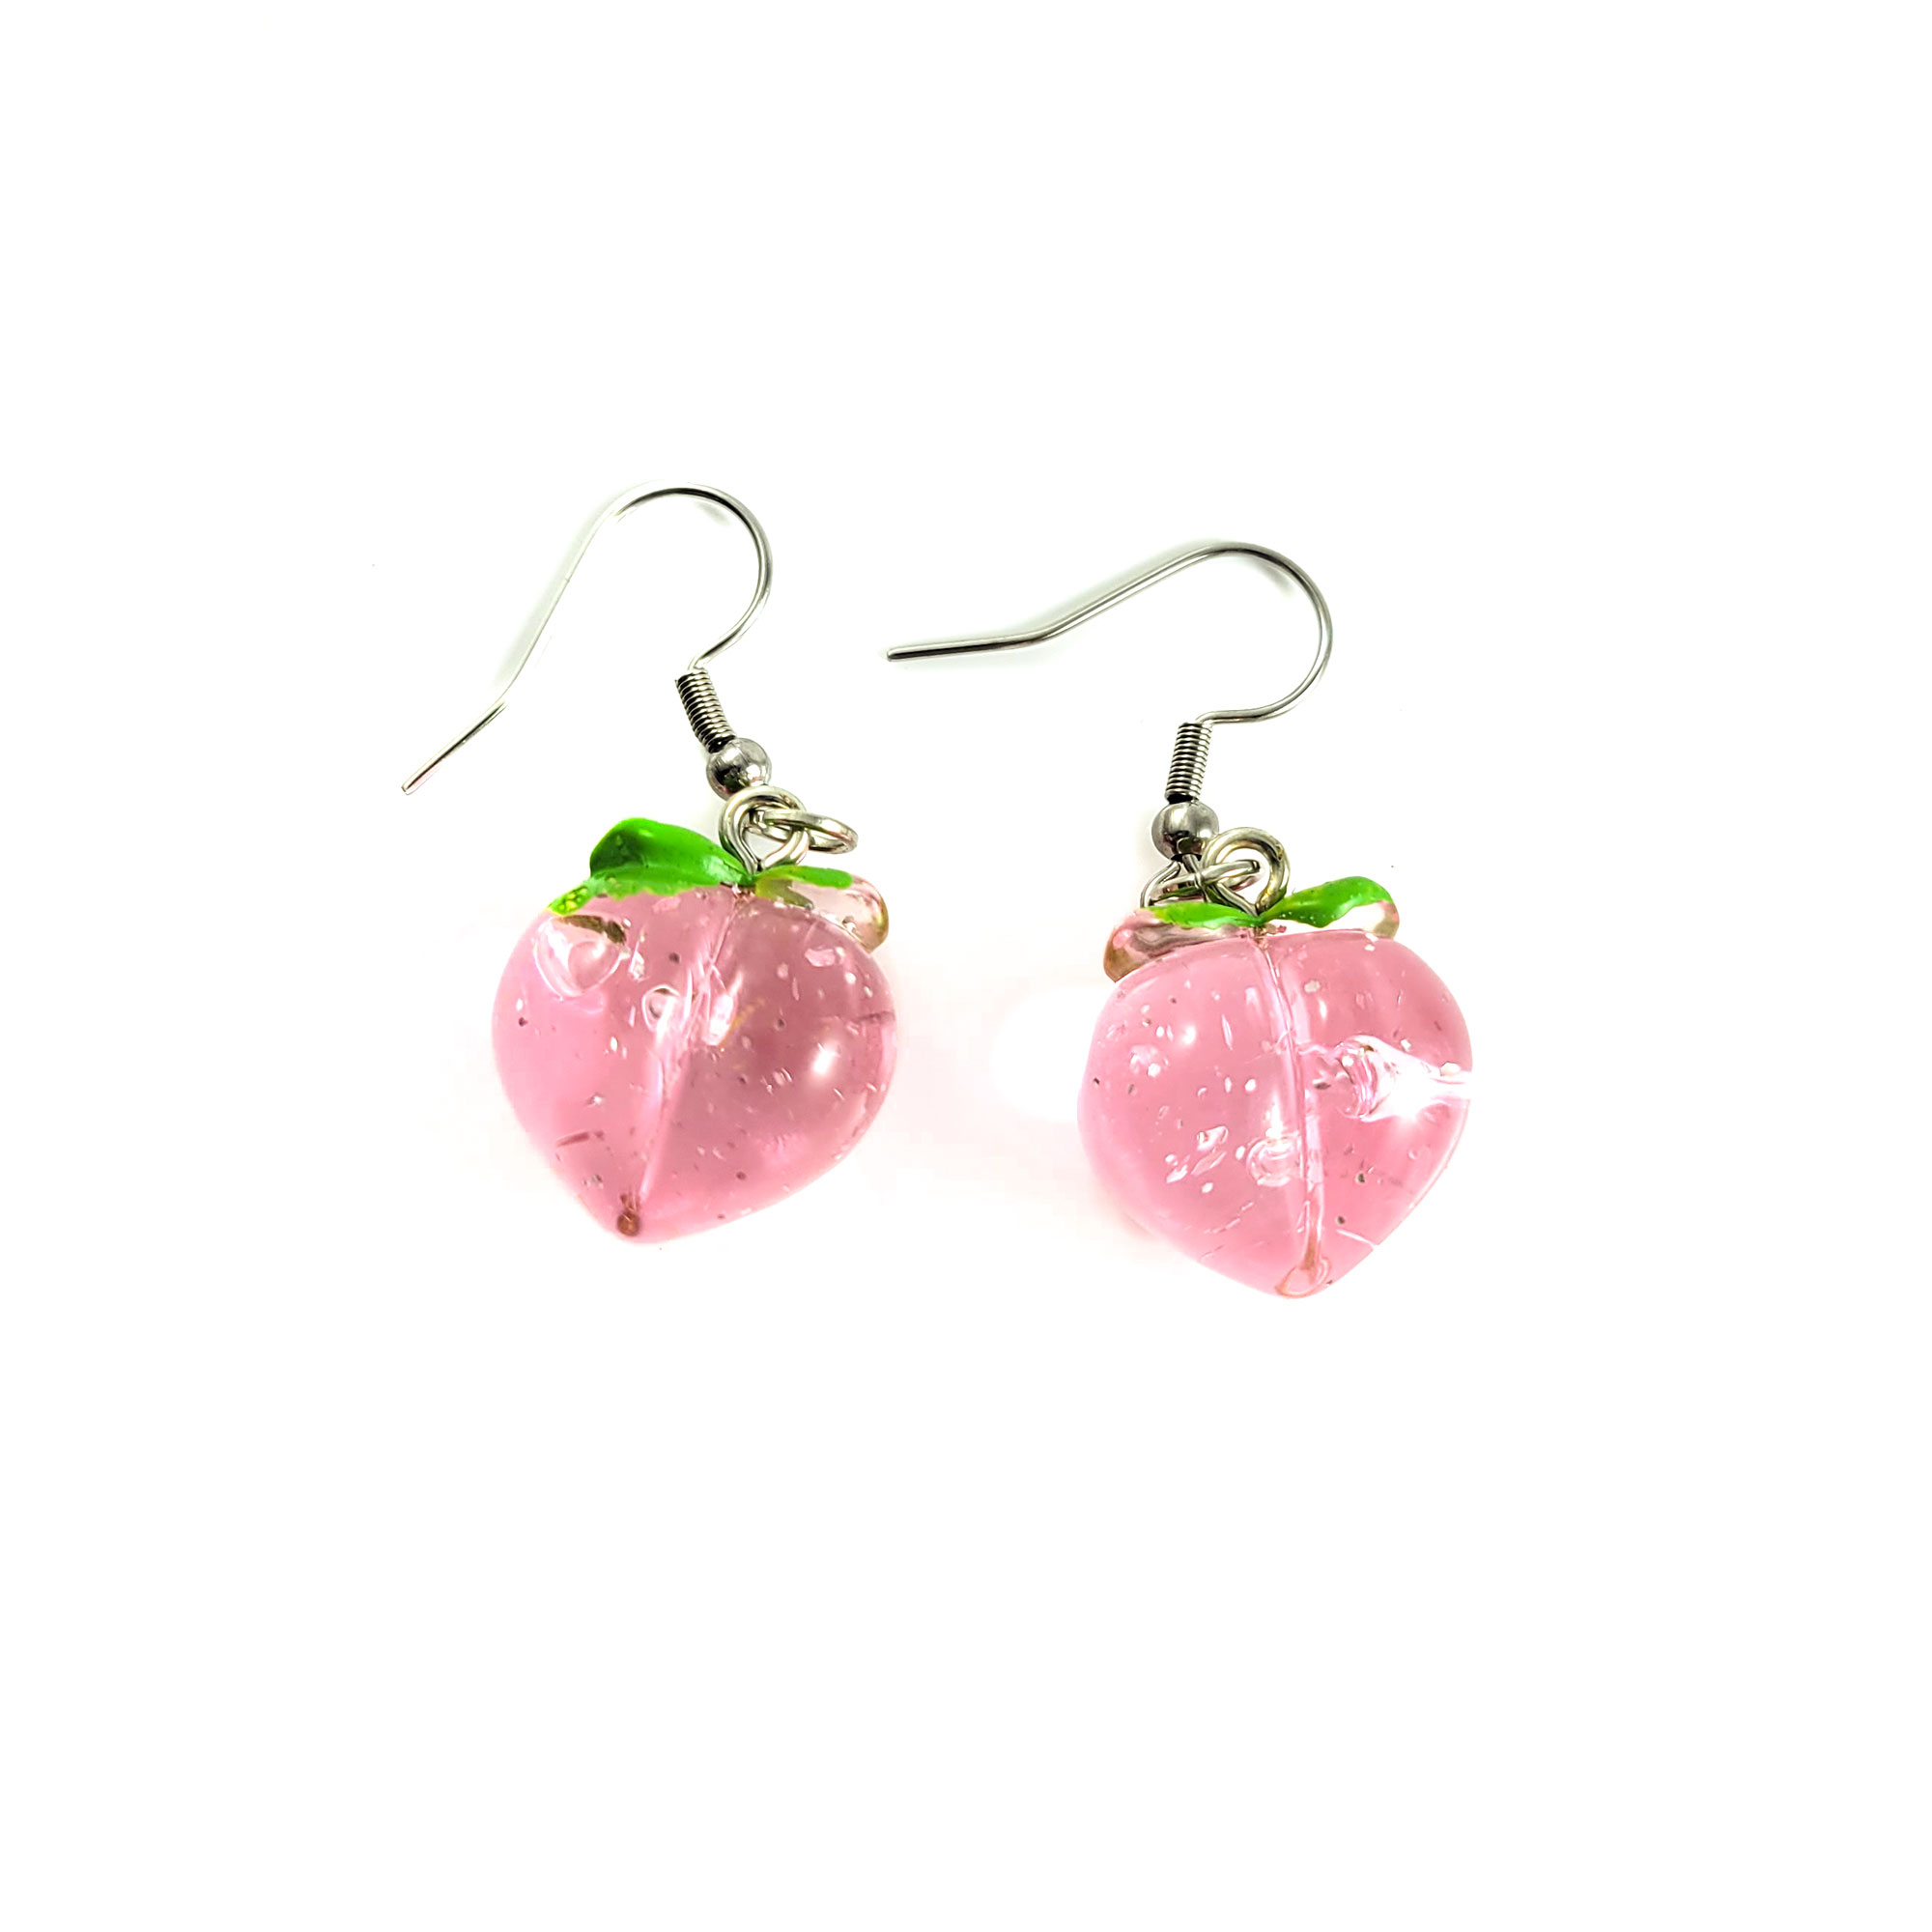 Peachy Keen Earrings by Wilde Designs